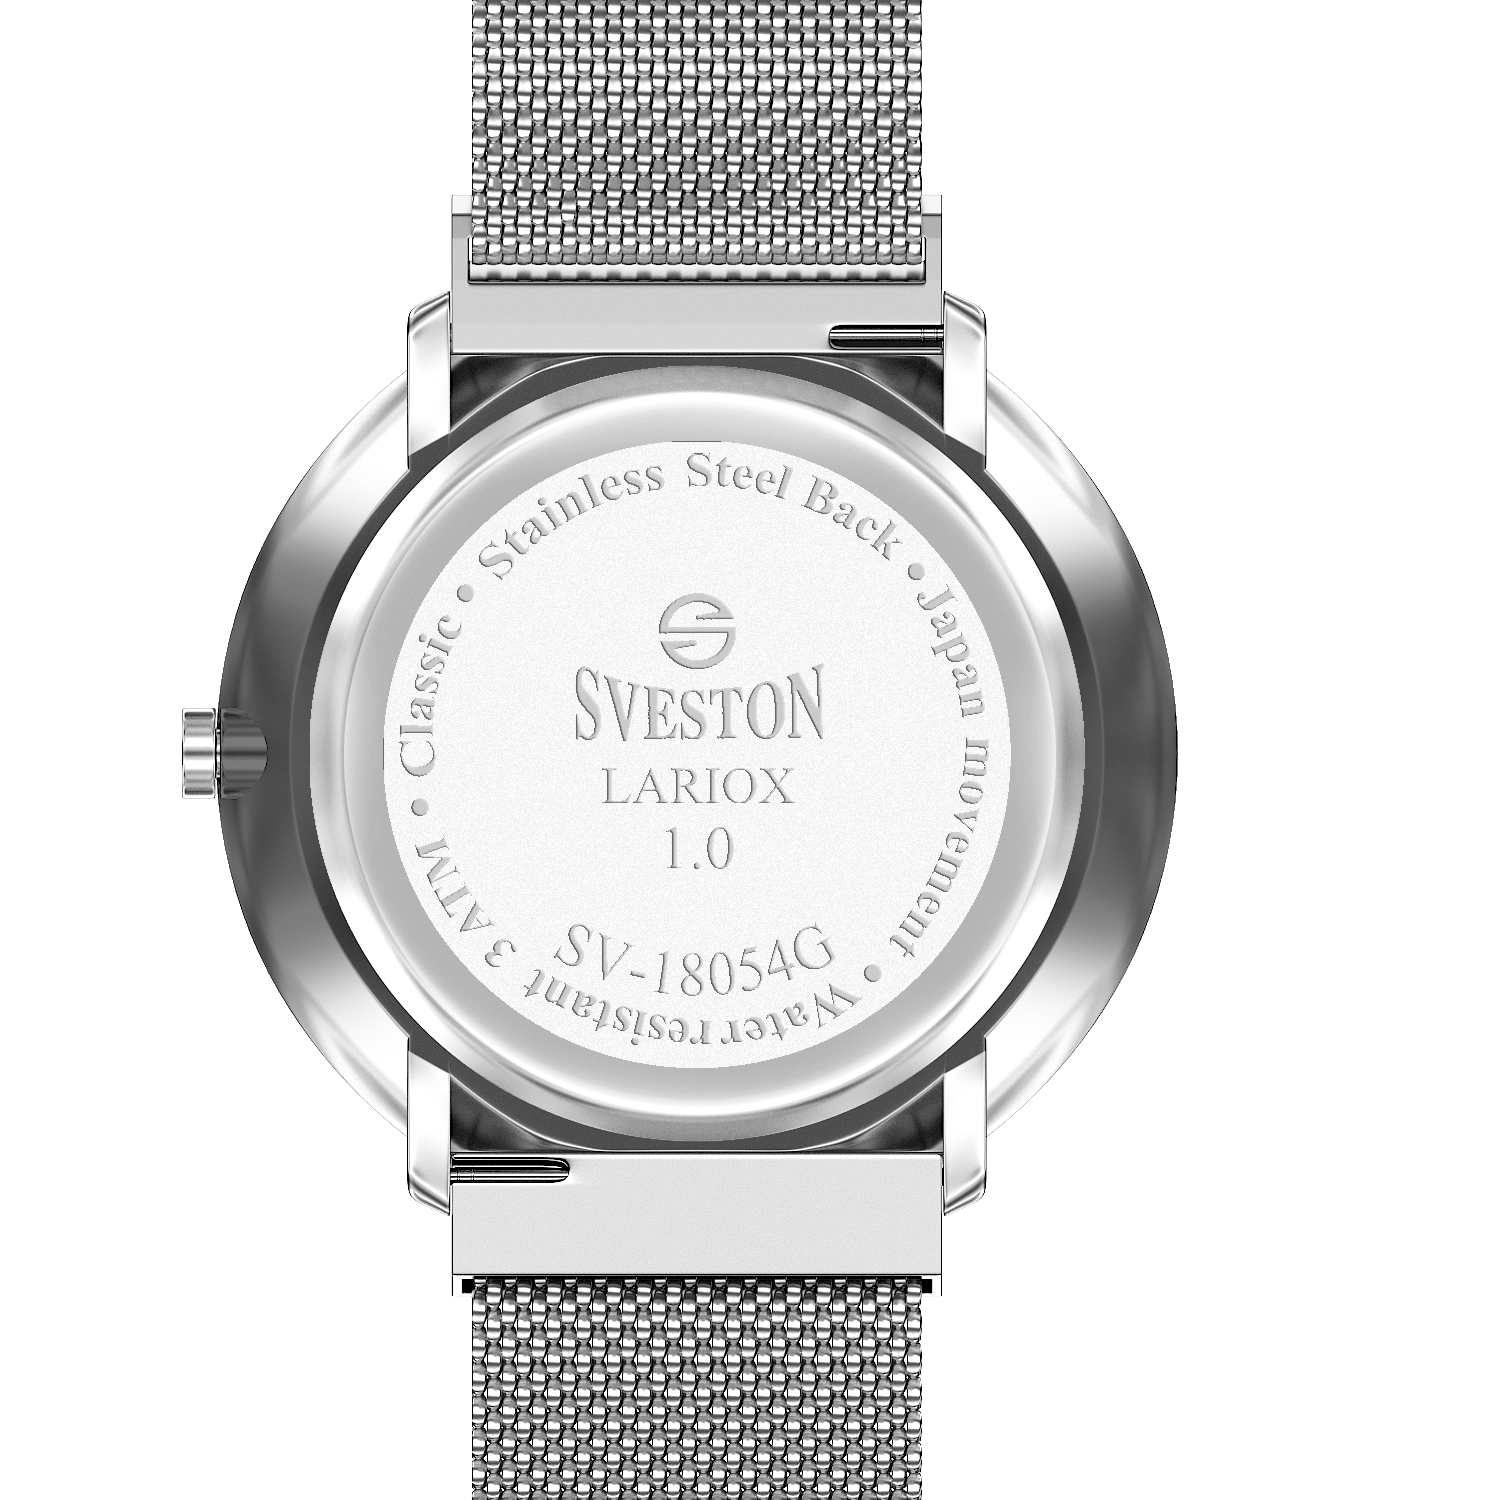 Sveston Lariox SV-18054 | Formal | Limited Stocked